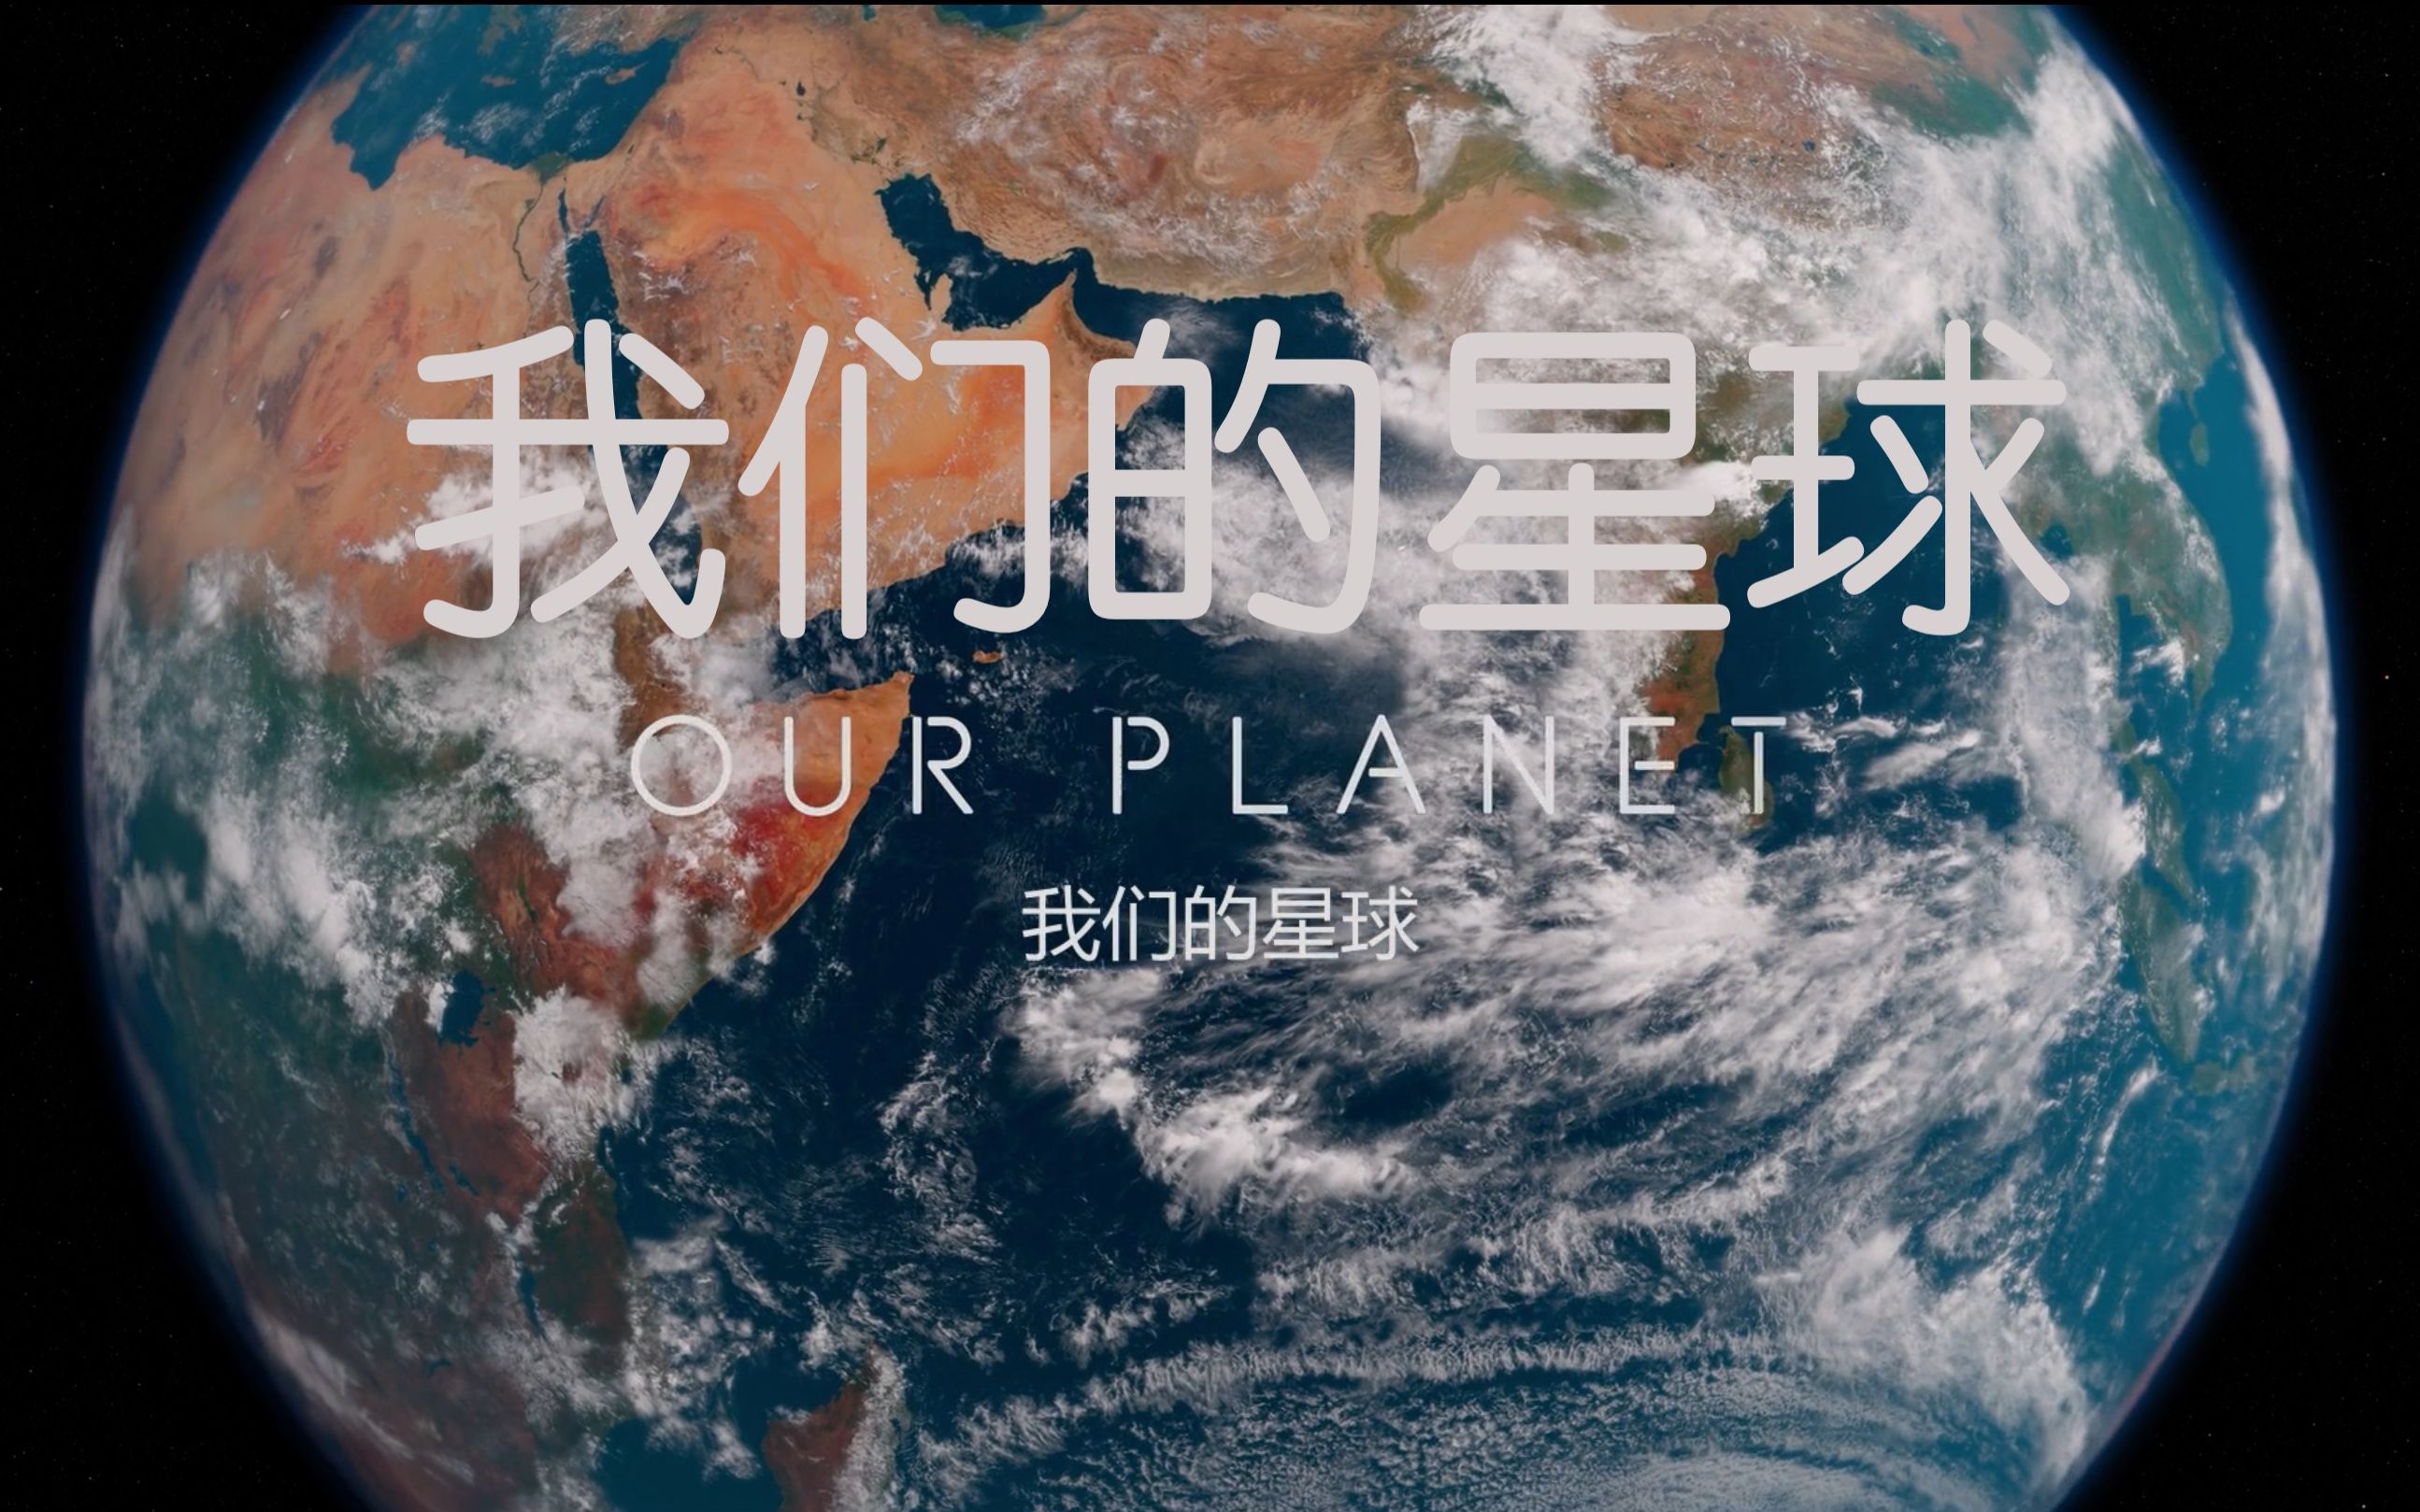 【Netflix】我们的星球 1080P珍藏版 Our Planet (2019)